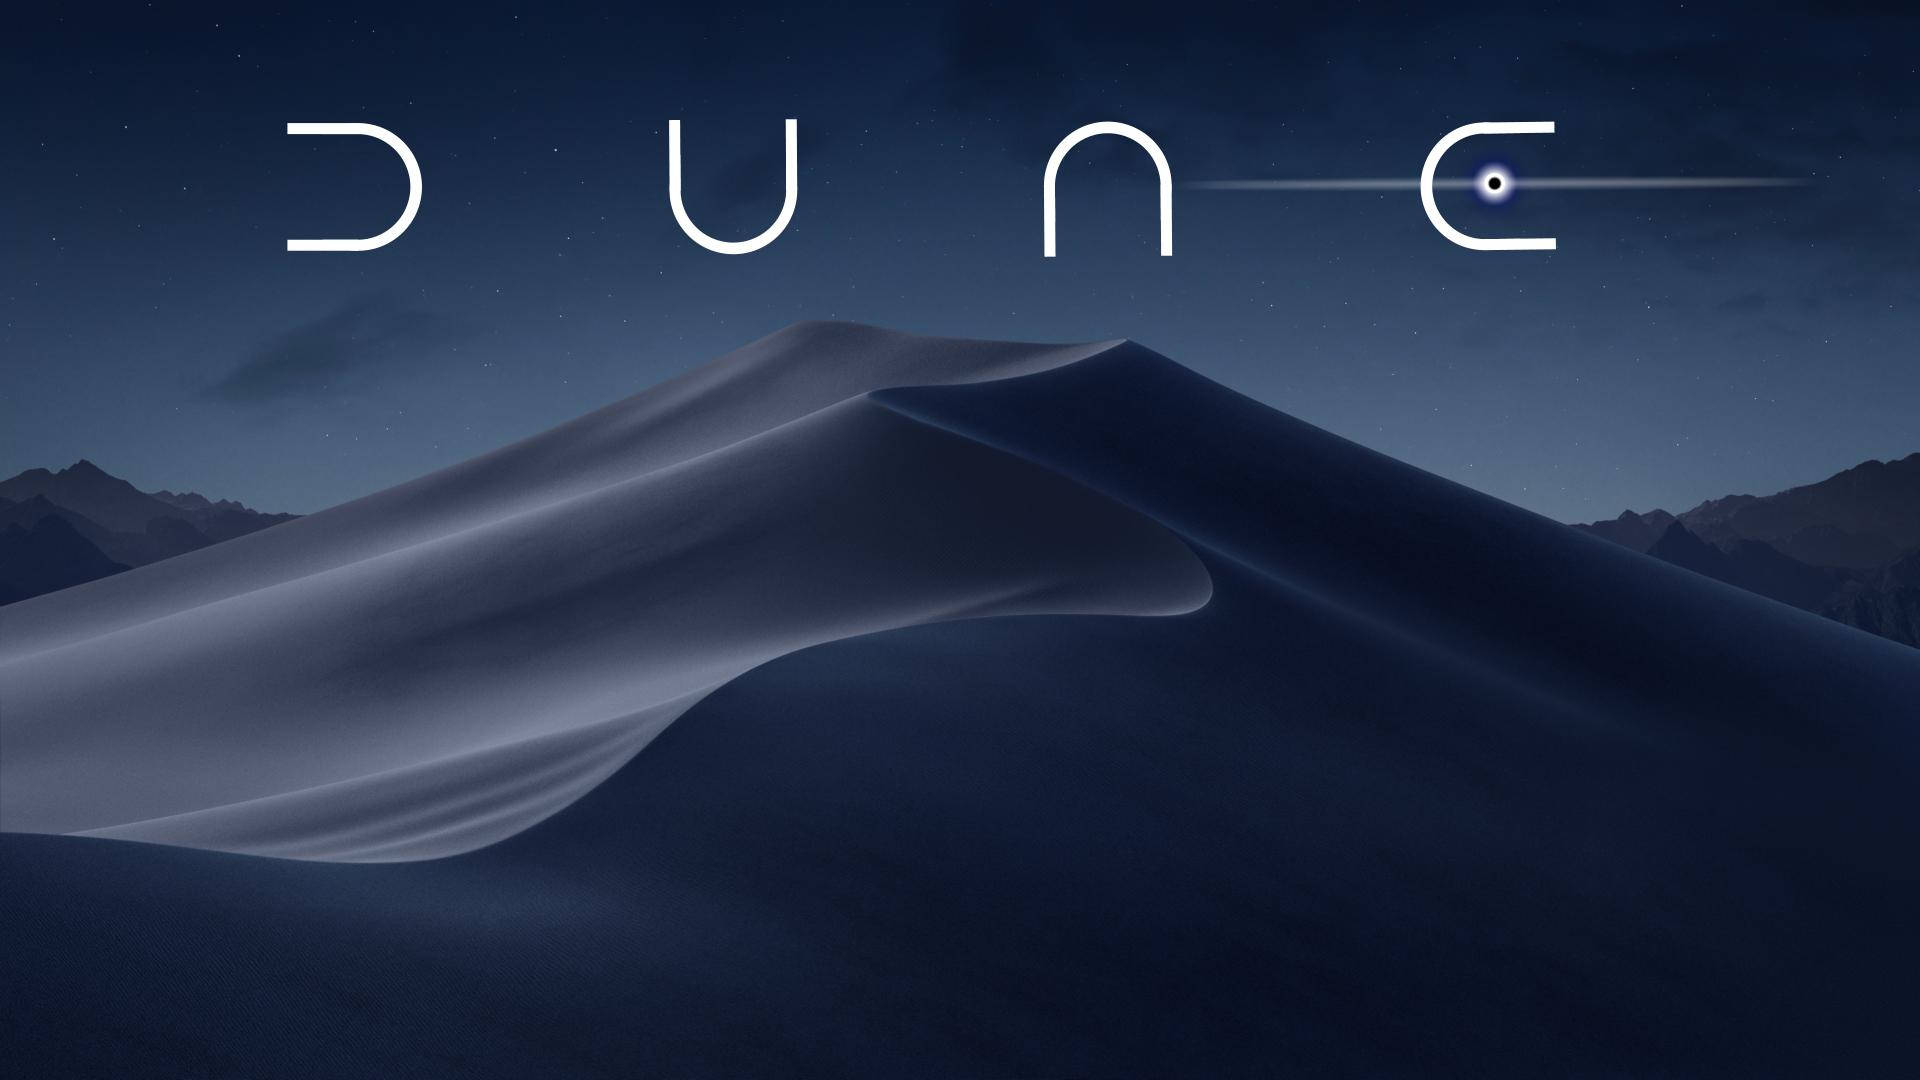 Dune Movie Desert Space Cover Wallpaper